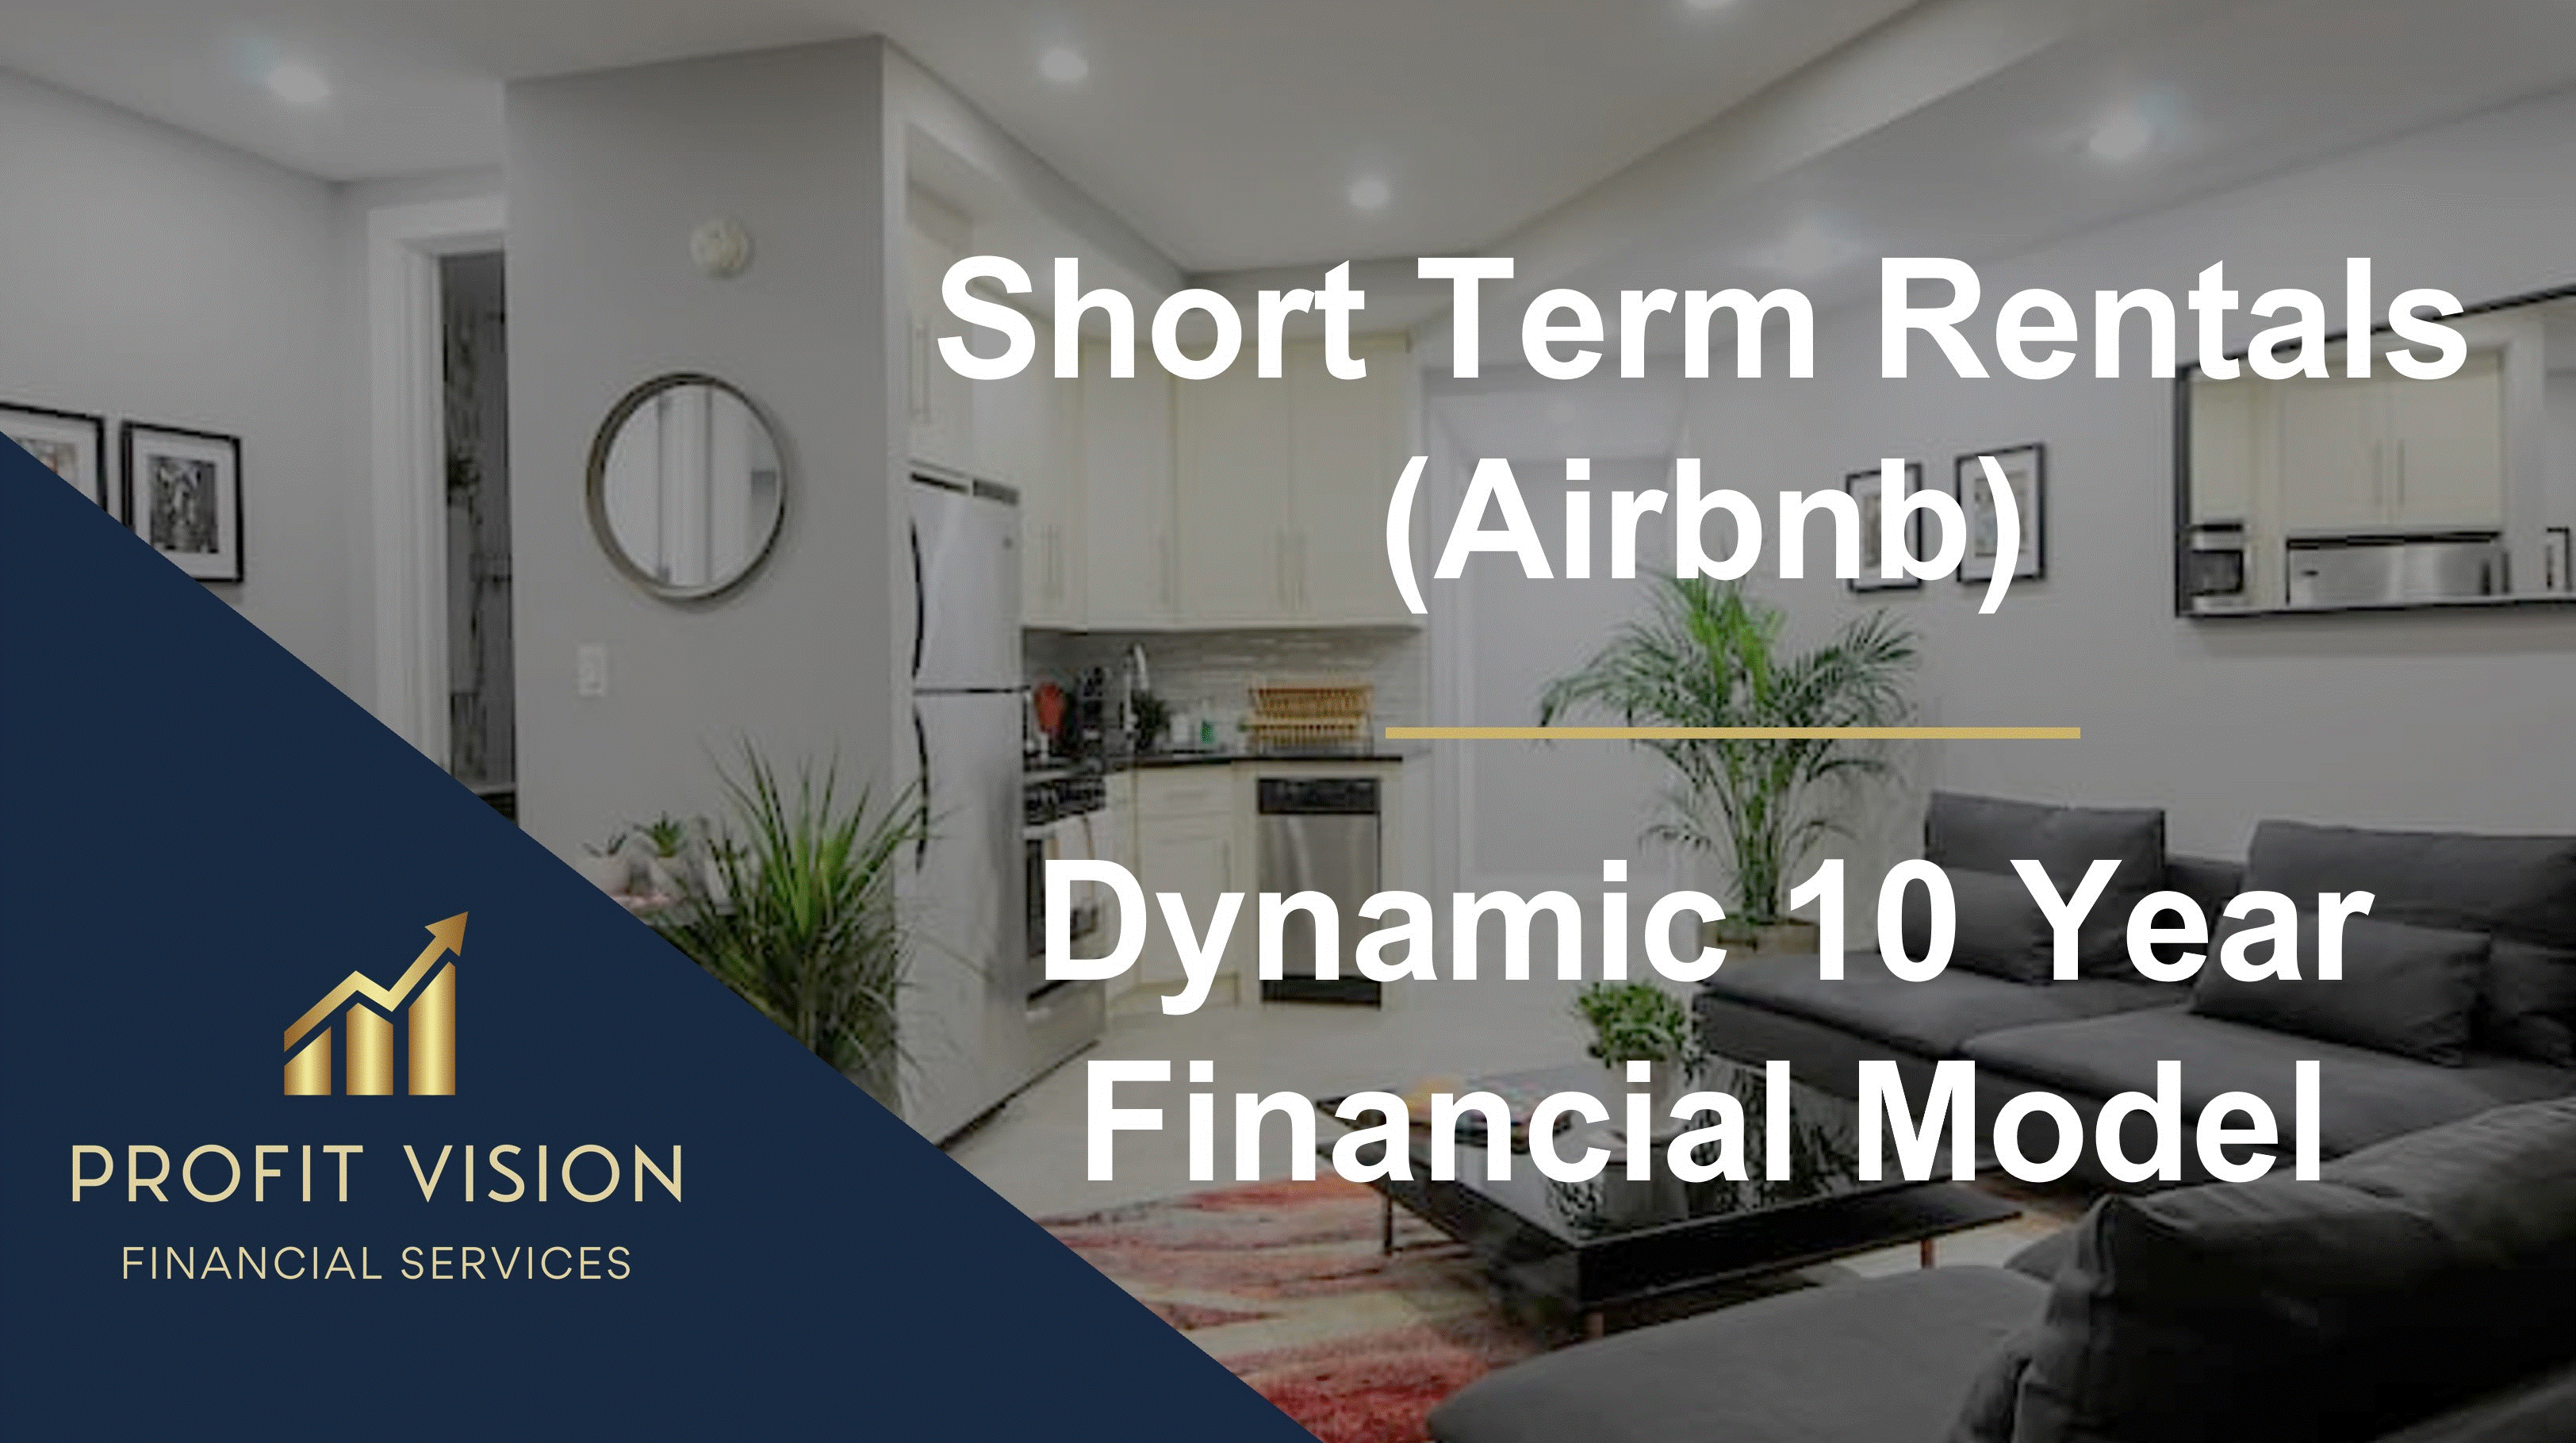 Short Term Rentals (Airbnb) Financial Model